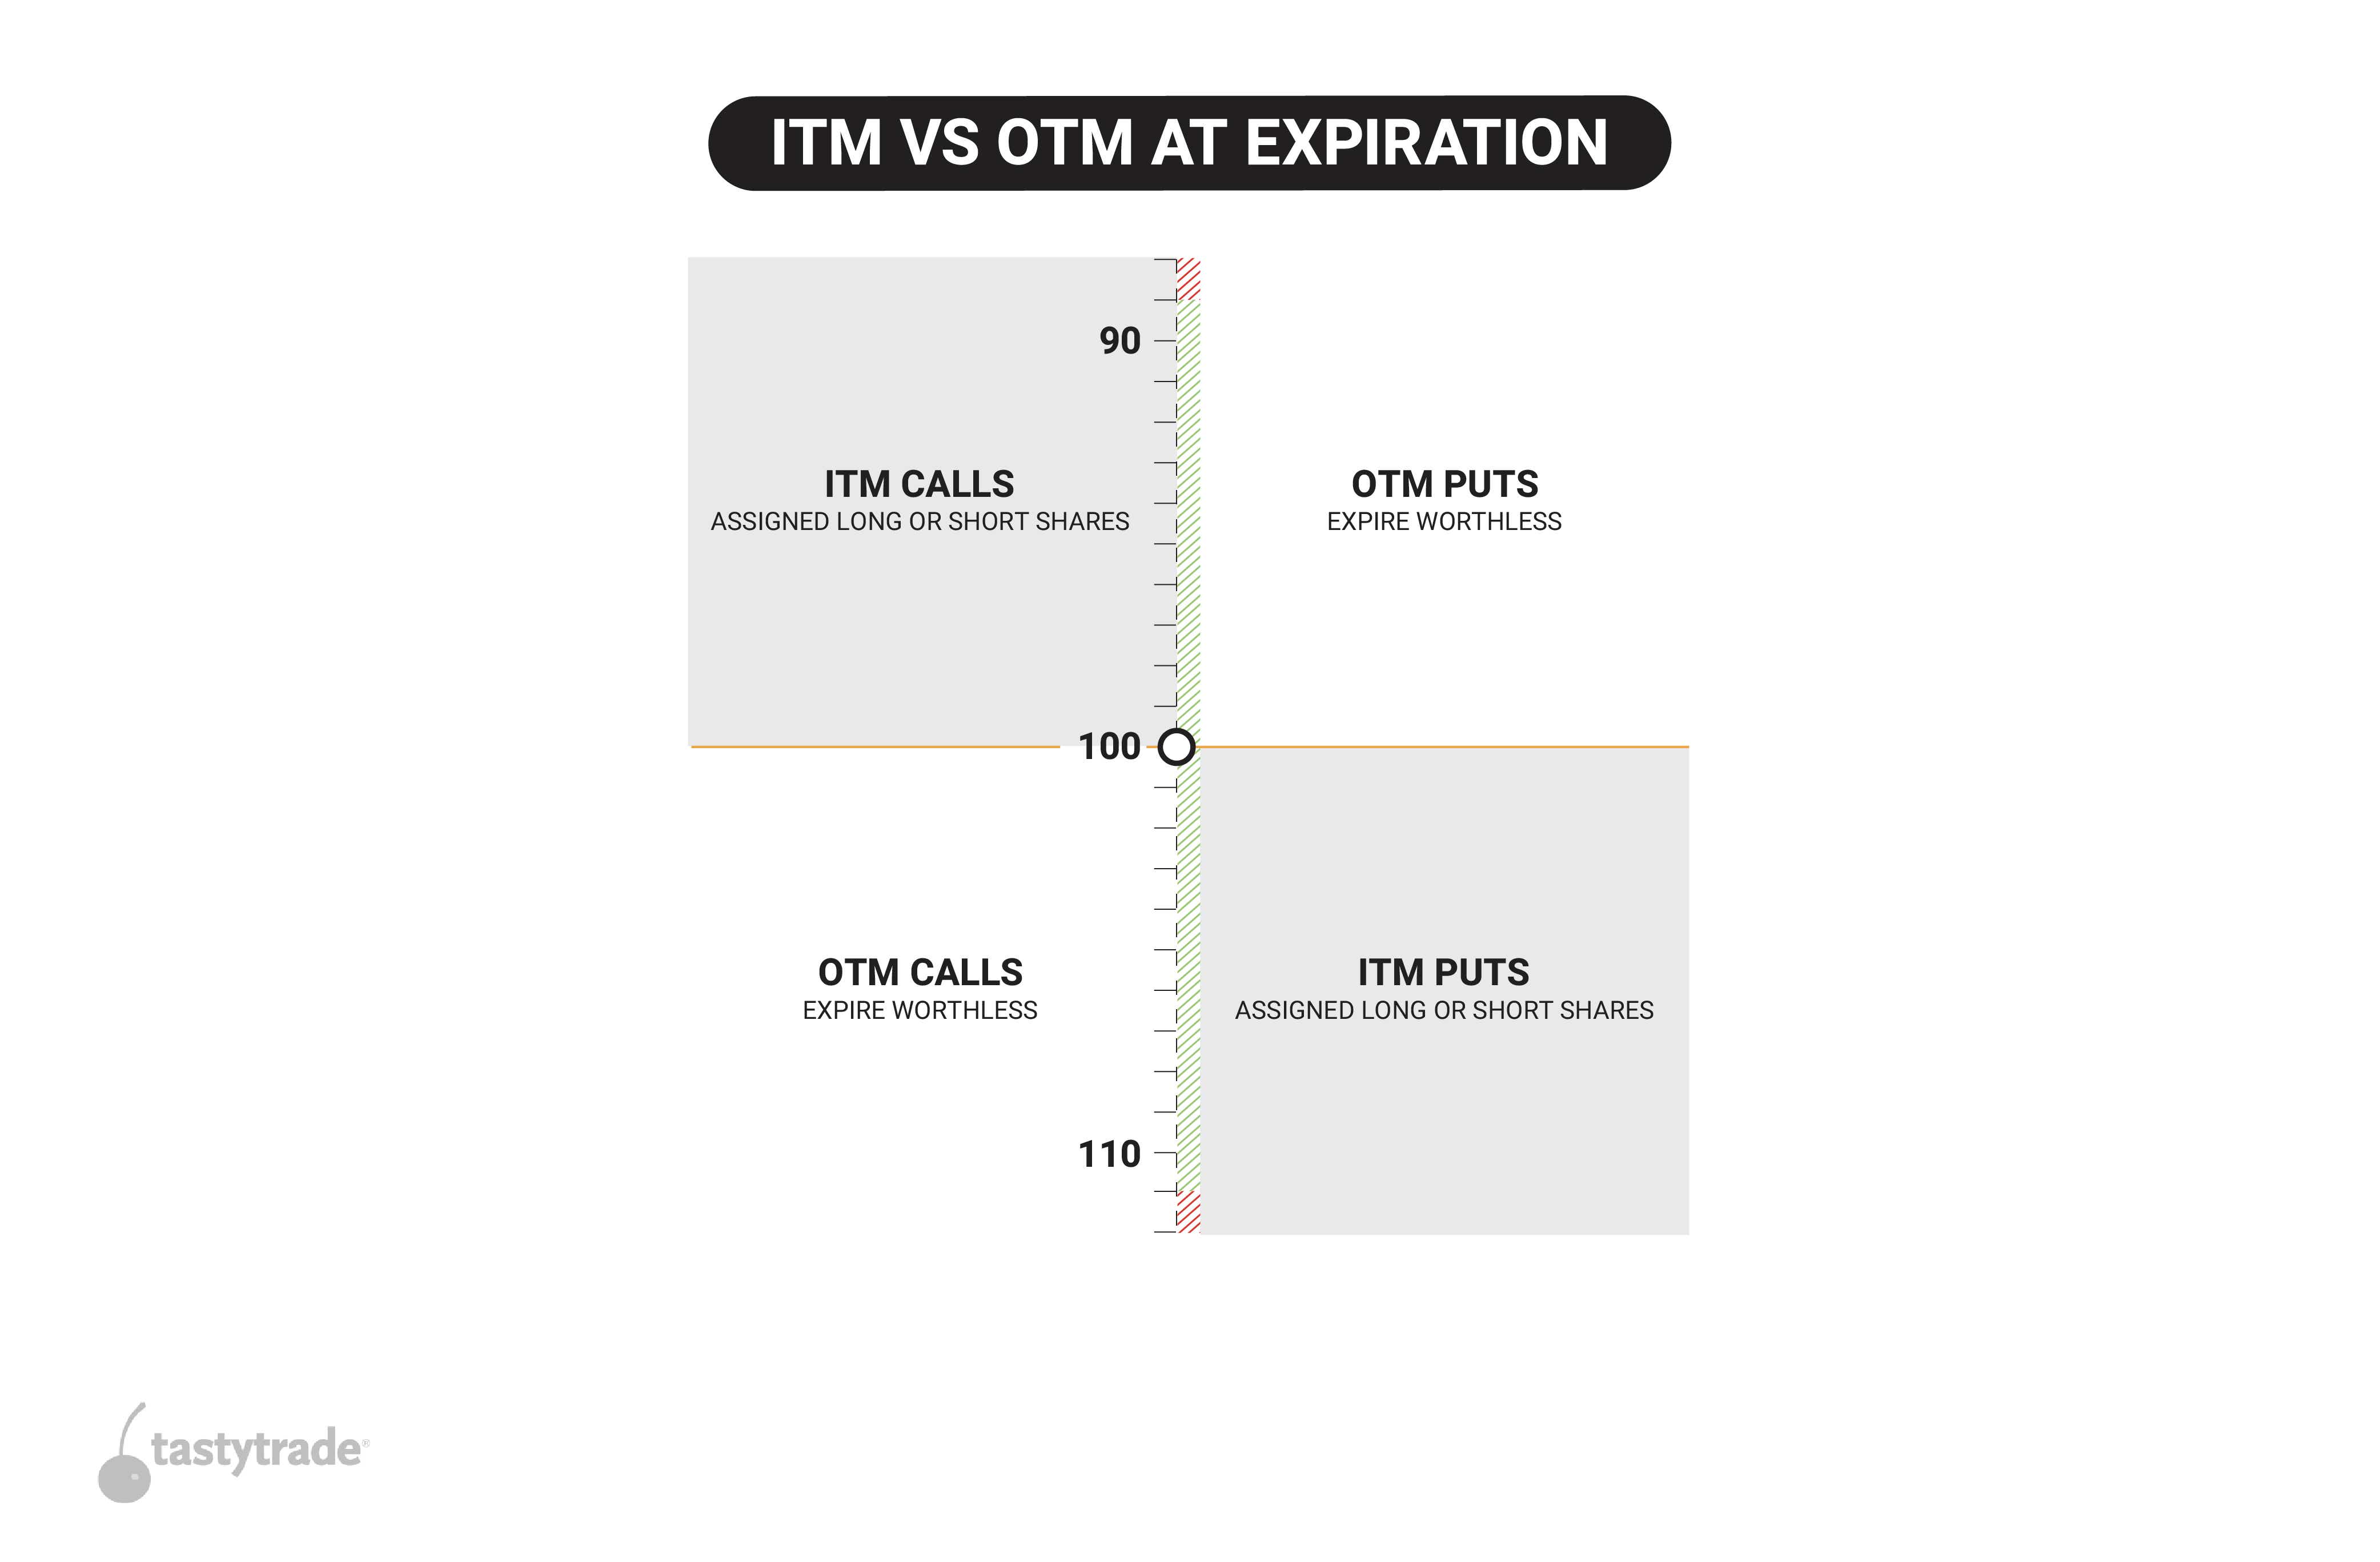 ITM vs OTM calls/puts at expiration